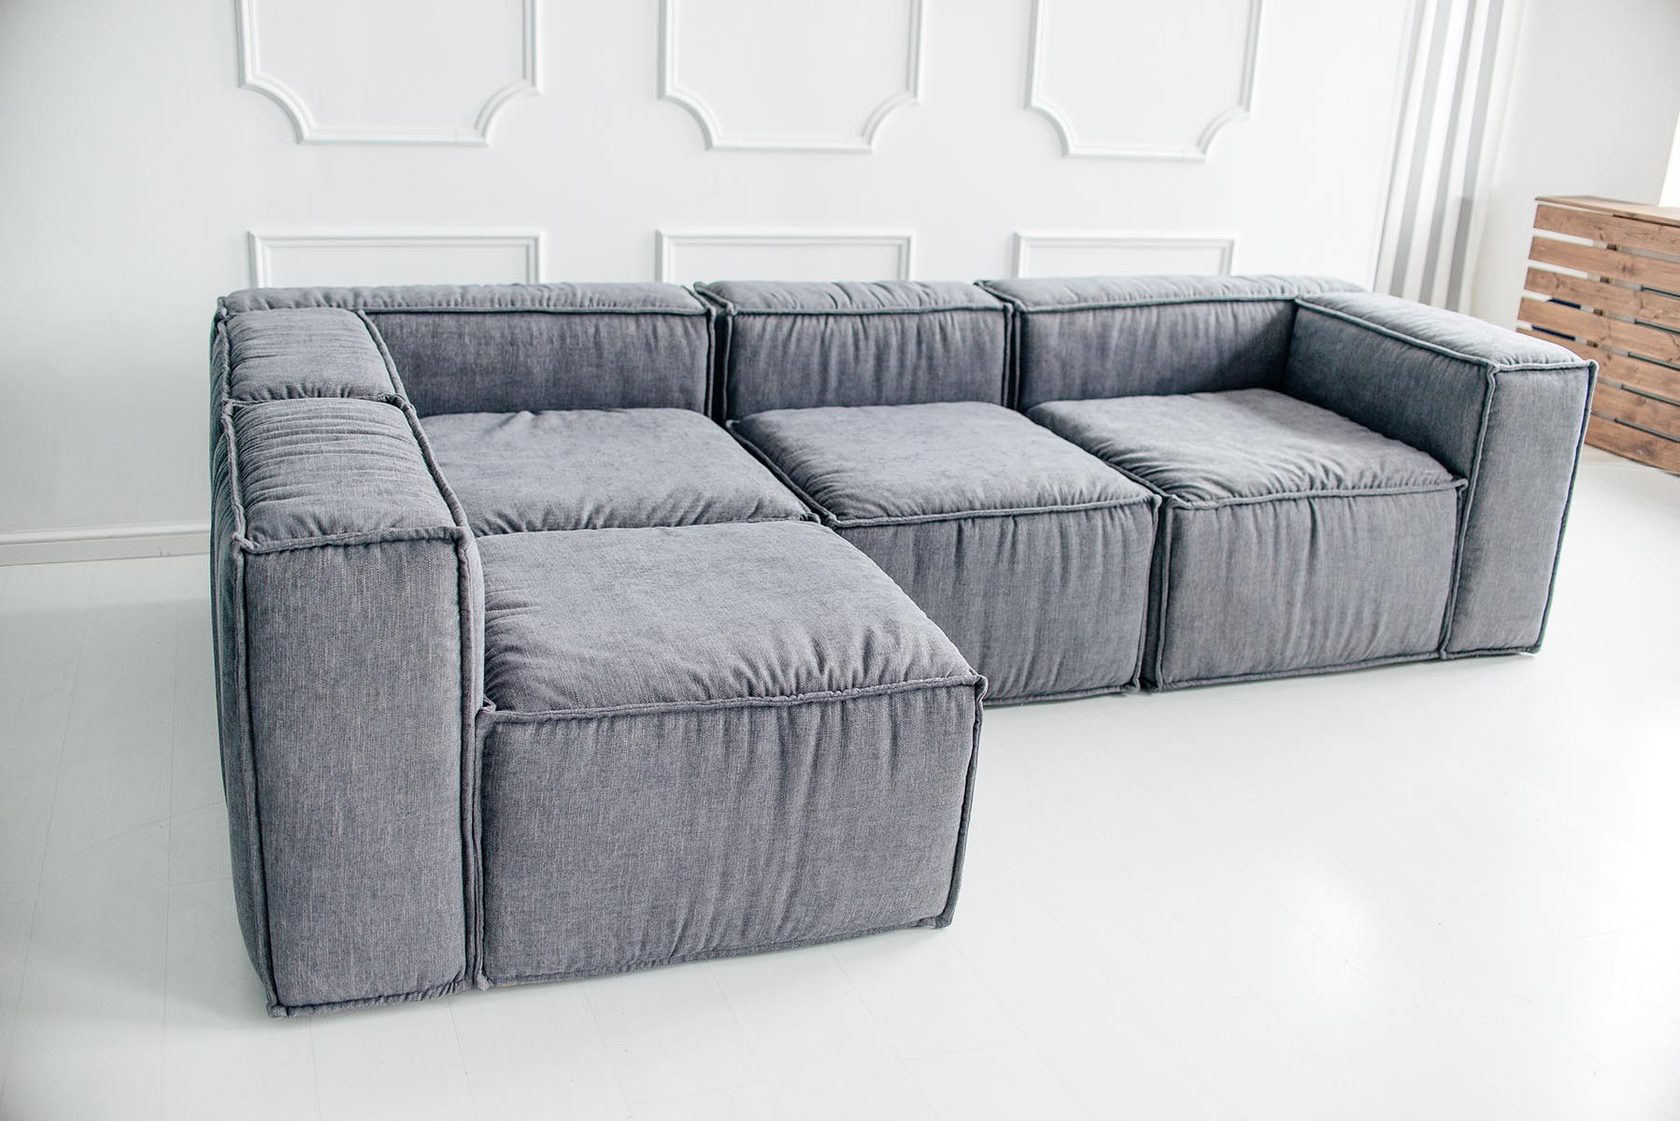 модульный диван из пуфиков